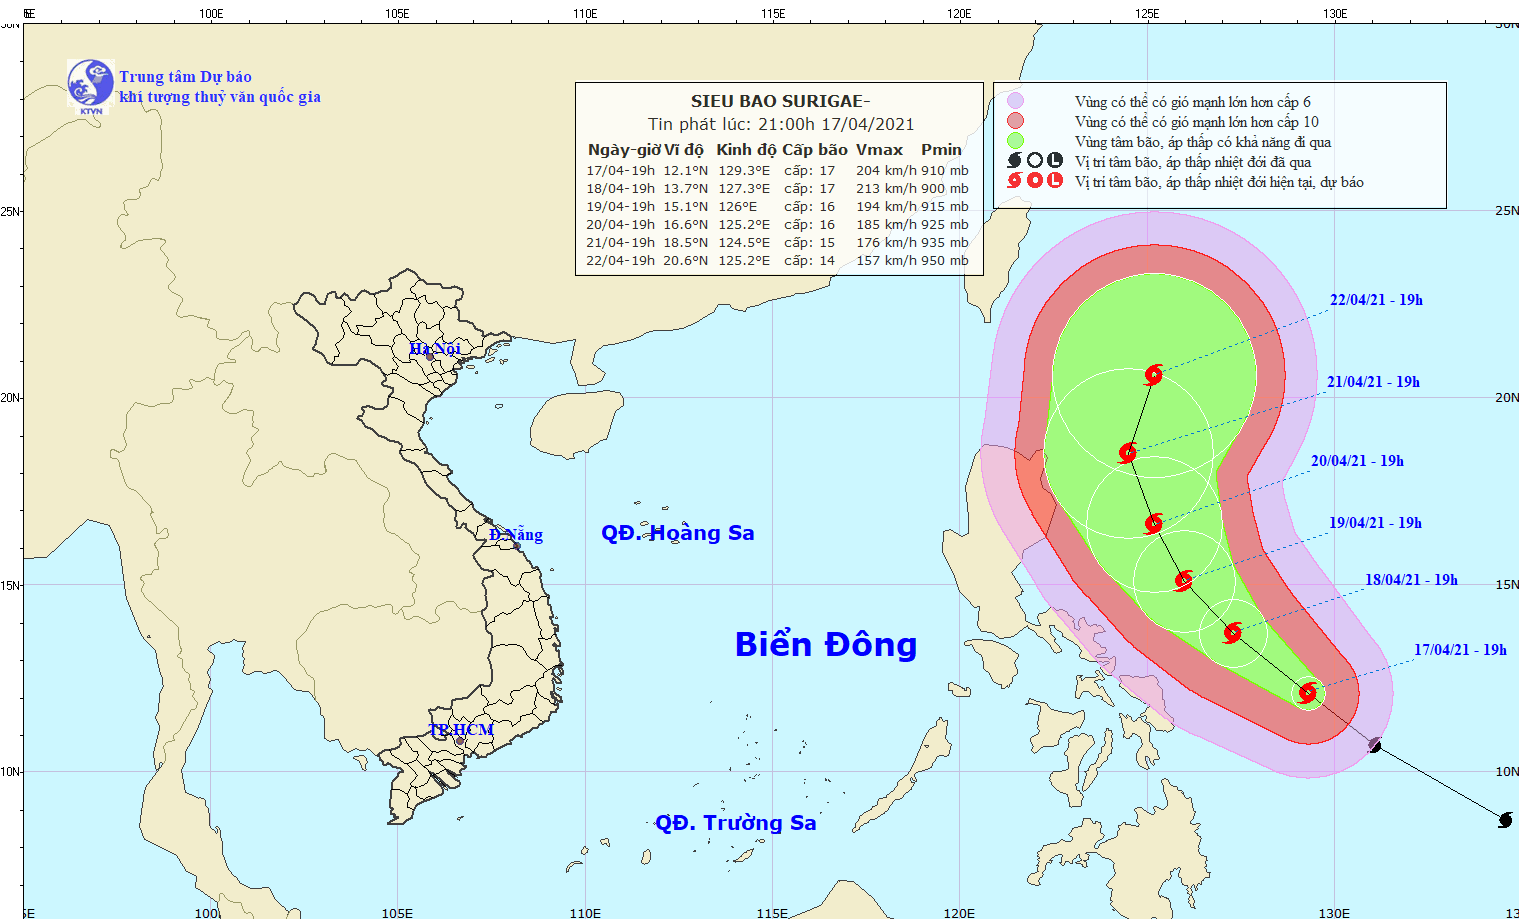 Siêu bão Surigae giật cấp 17 ở vùng biển phía đông miền trung Philippines